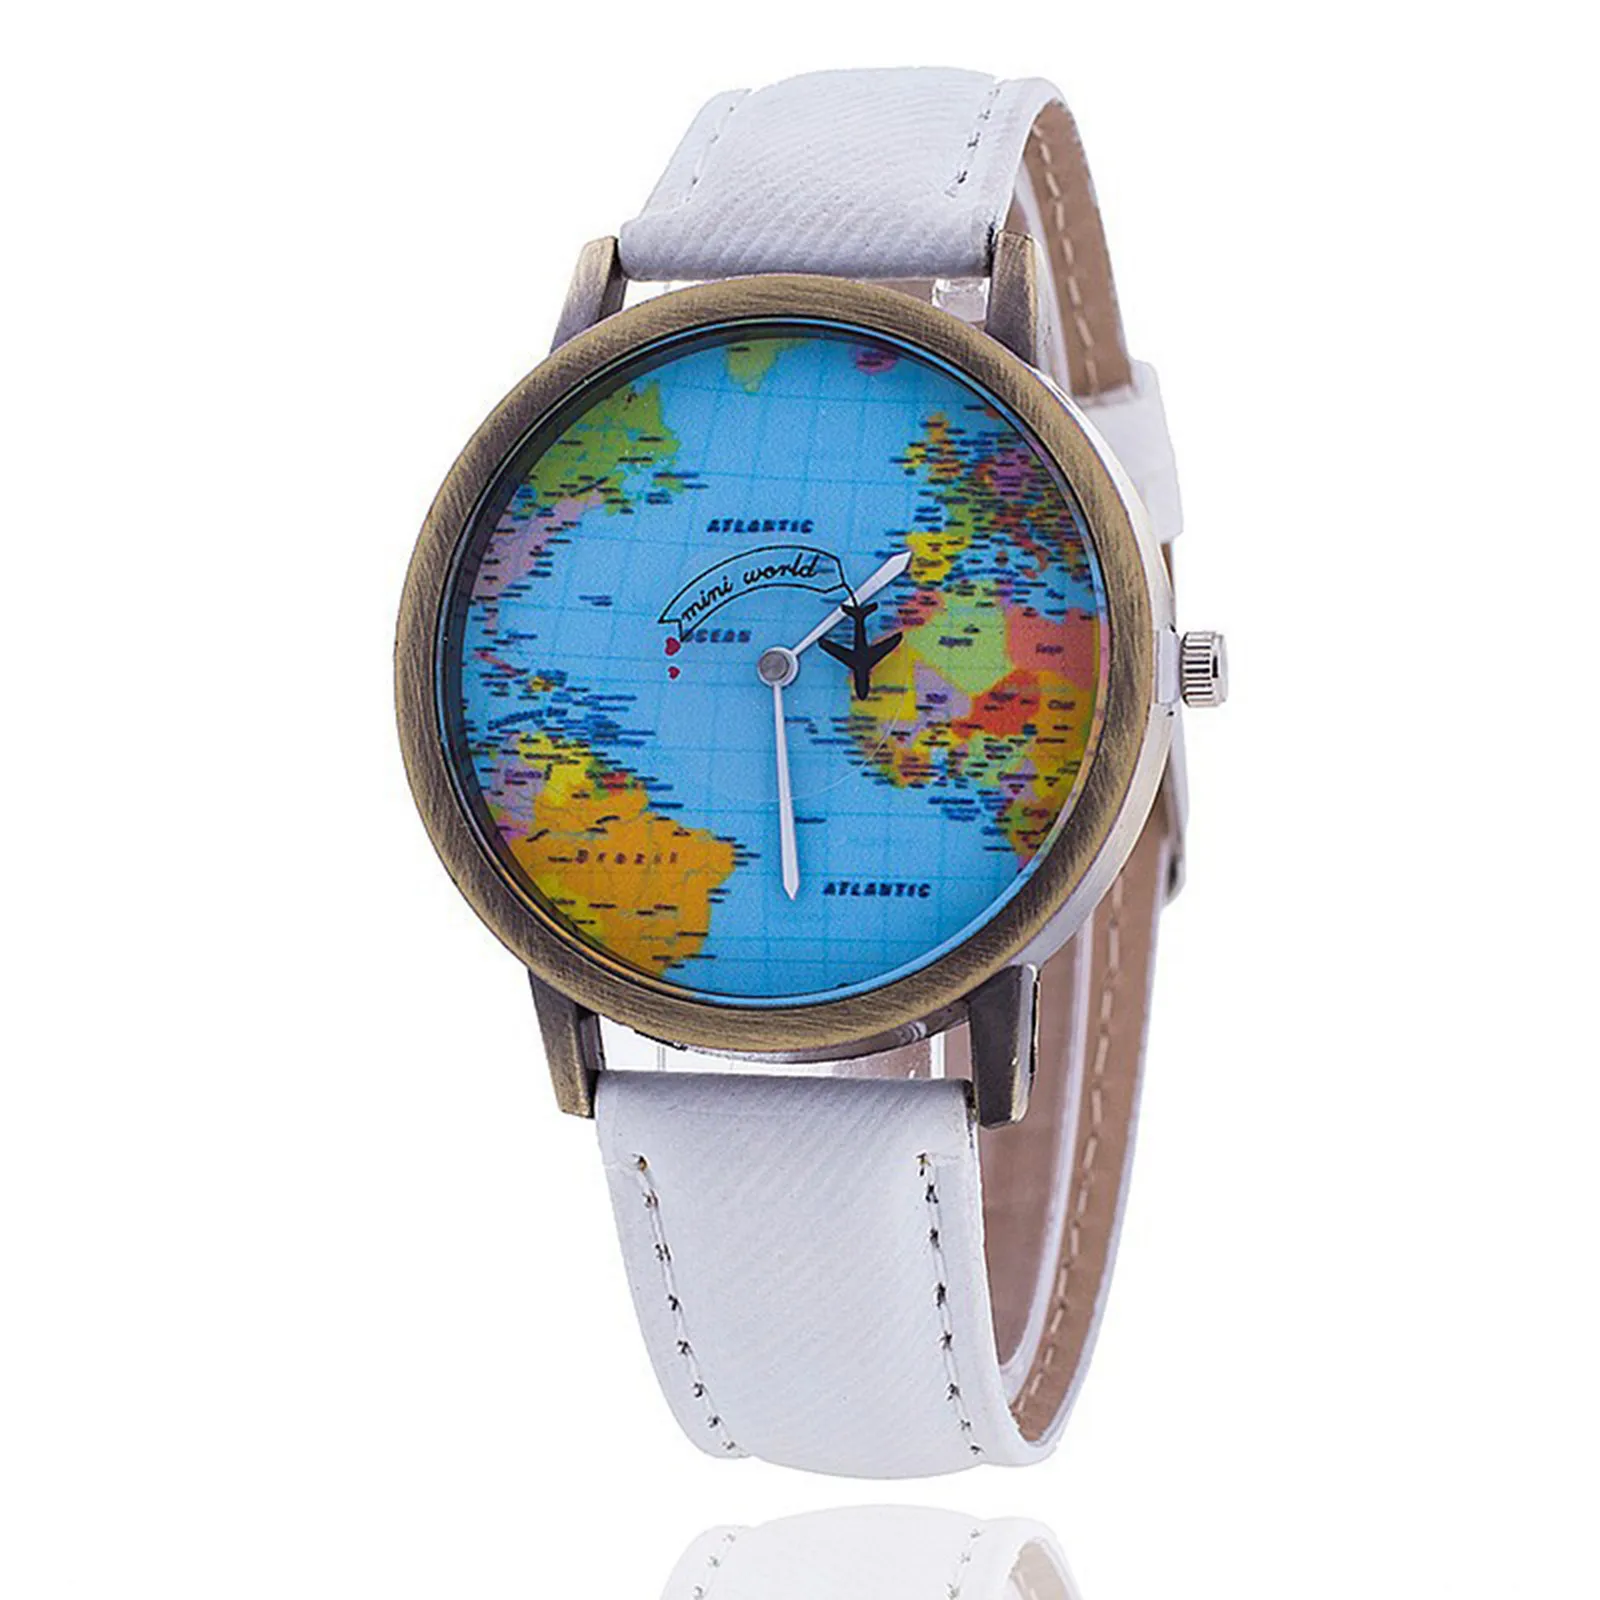 

Fashion Retro Belt Quartz Watch Airplane Second Hand Map Watch Unisex Dial Design Wrist Watch Accessories For Women Reloj